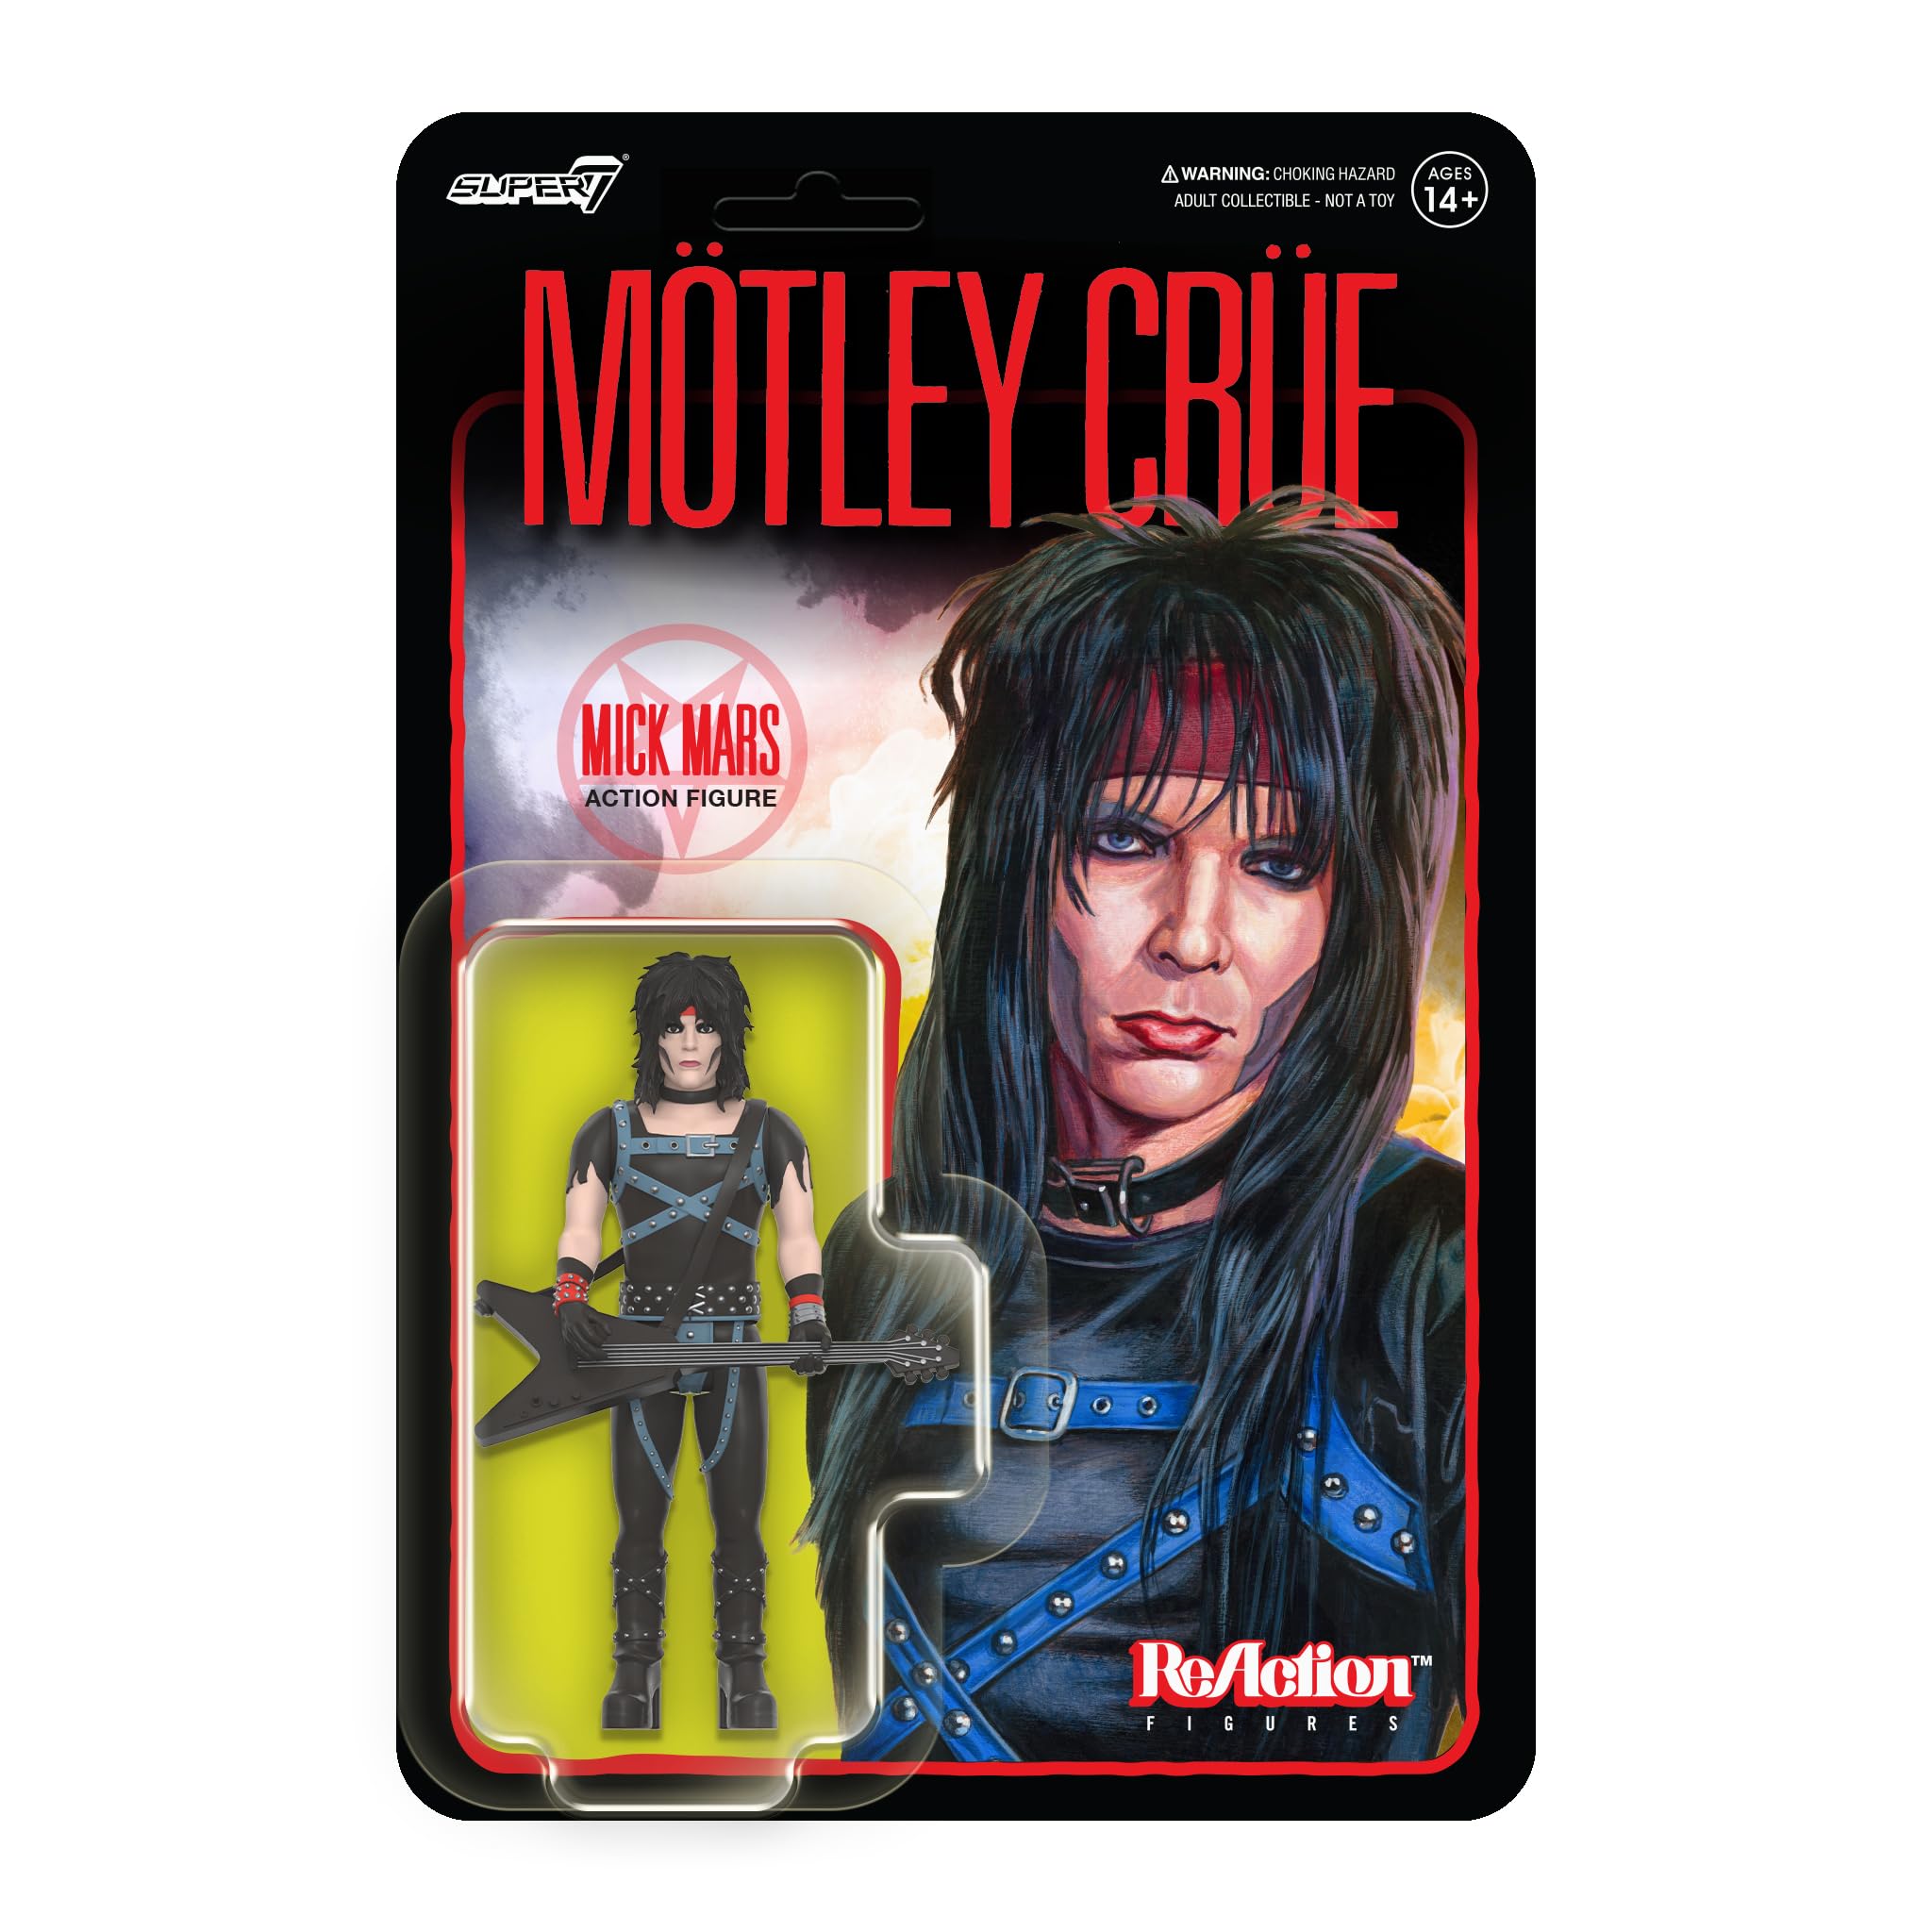 Motley Crue - Mick Mars REACTION FIGURE | L.A. Mood Comics and Games